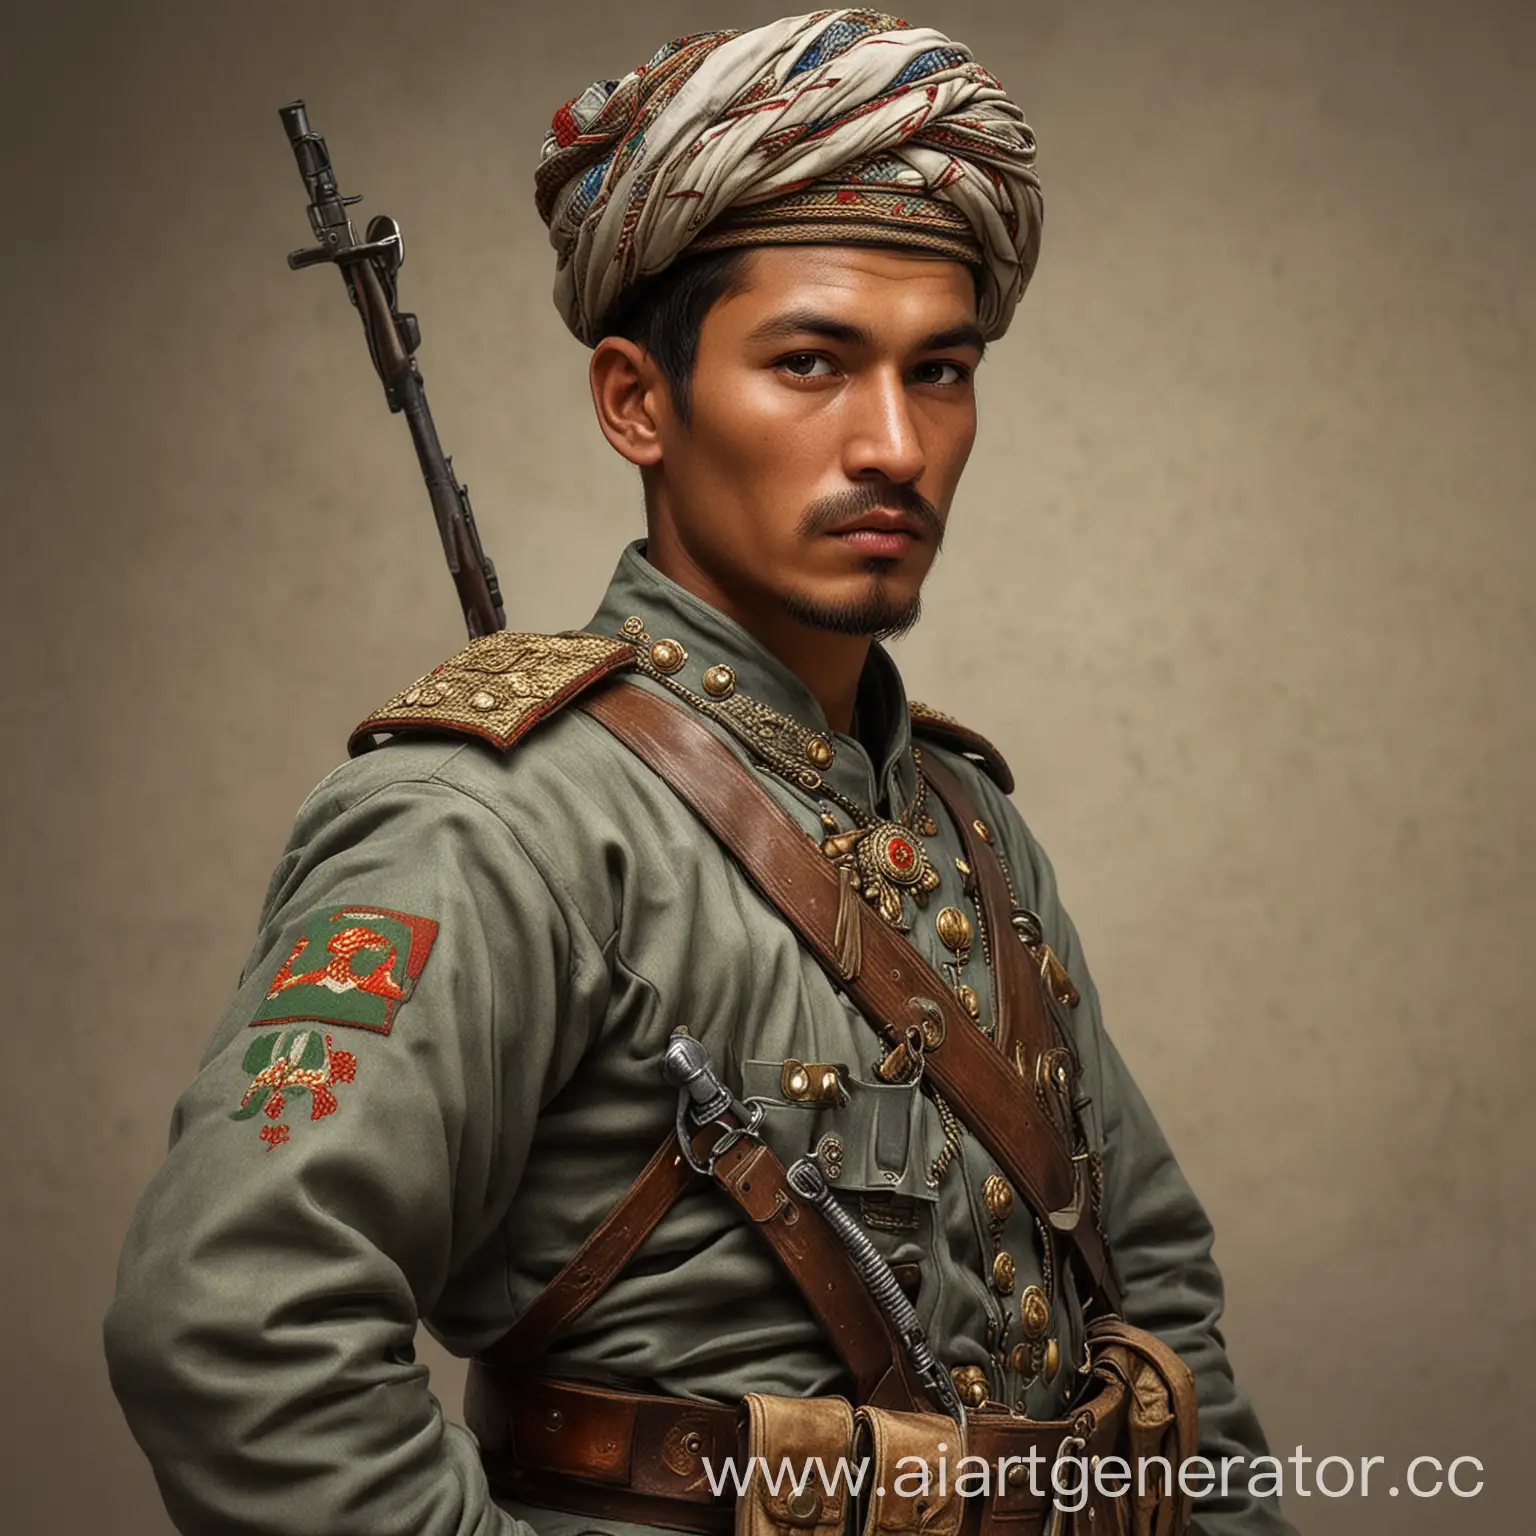 узбекский солдат 1900 года